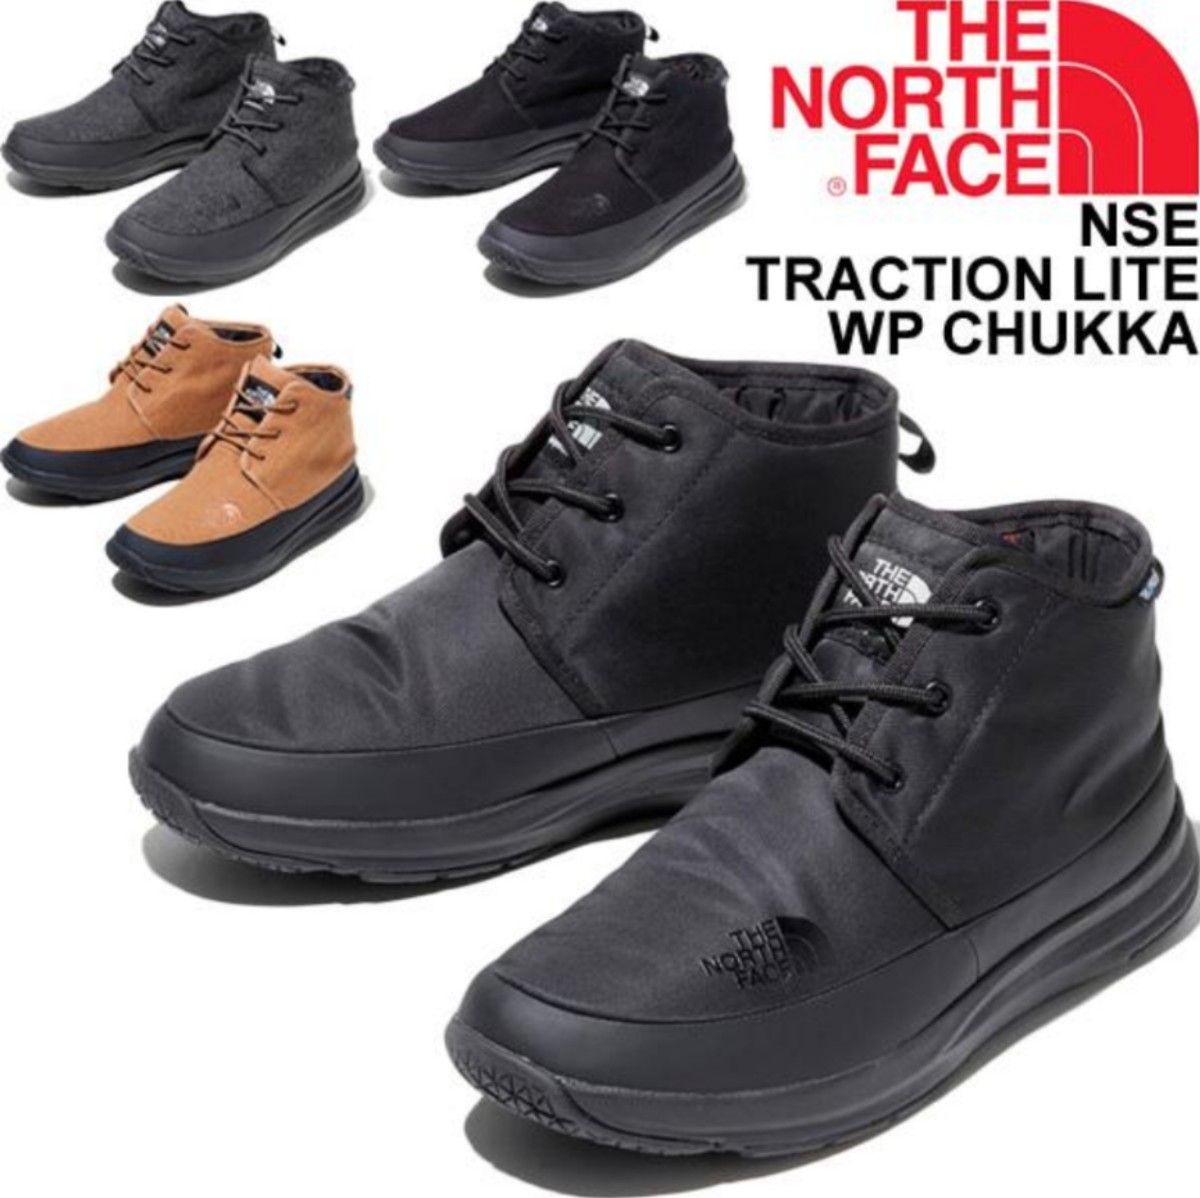  новый товар внутренний стандартный THE NORTH FACE 29cm North Face npsi traction свет WP ботинки чукка NF52085 цвет KN водонепроницаемый ботинки 